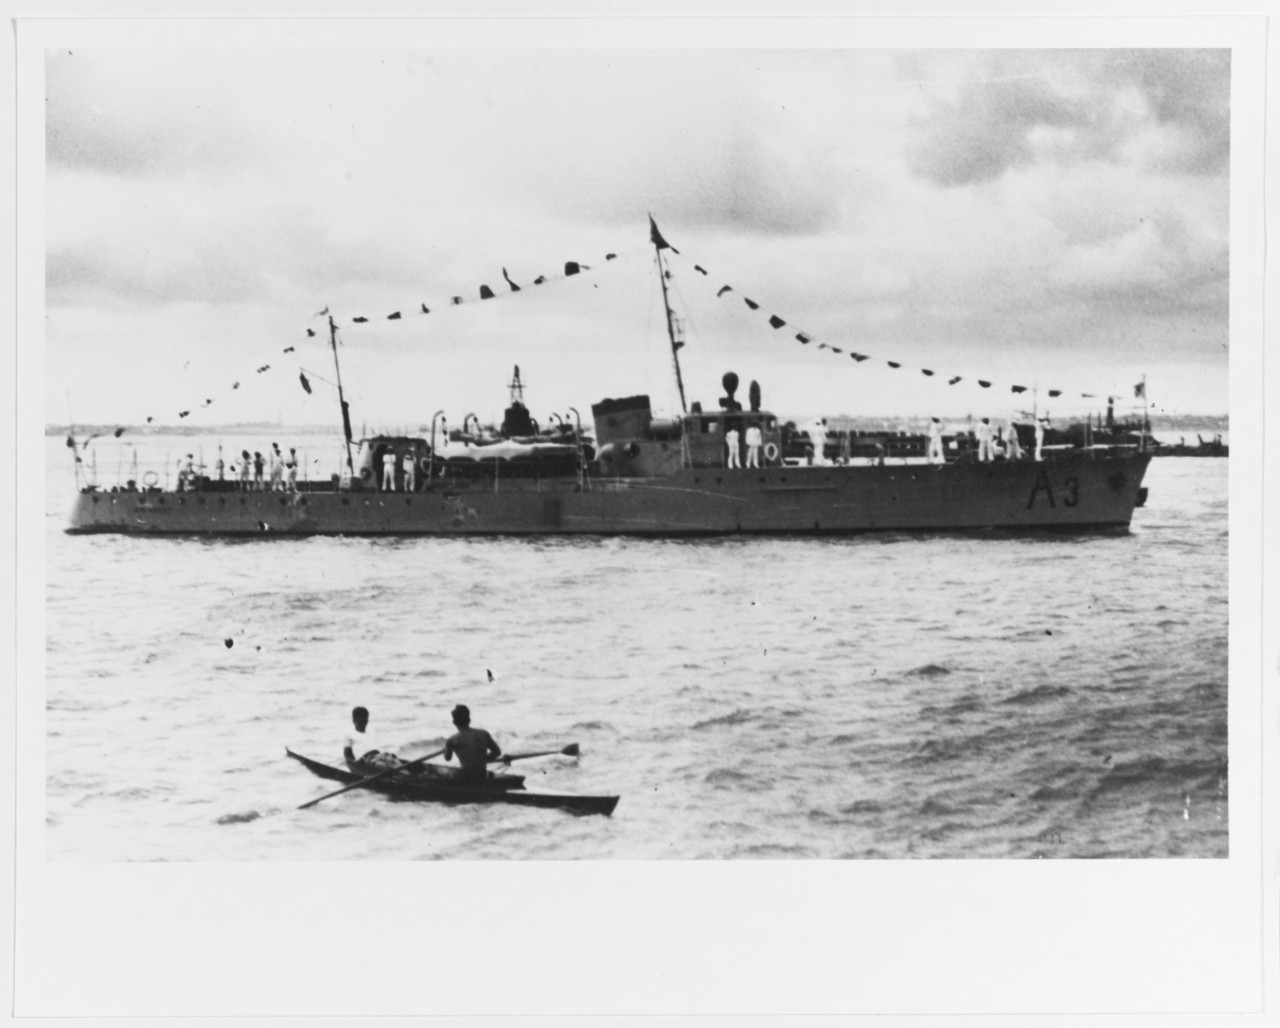 RIO NEGRO (Uruguayan patrol vessel, 1935-1969)